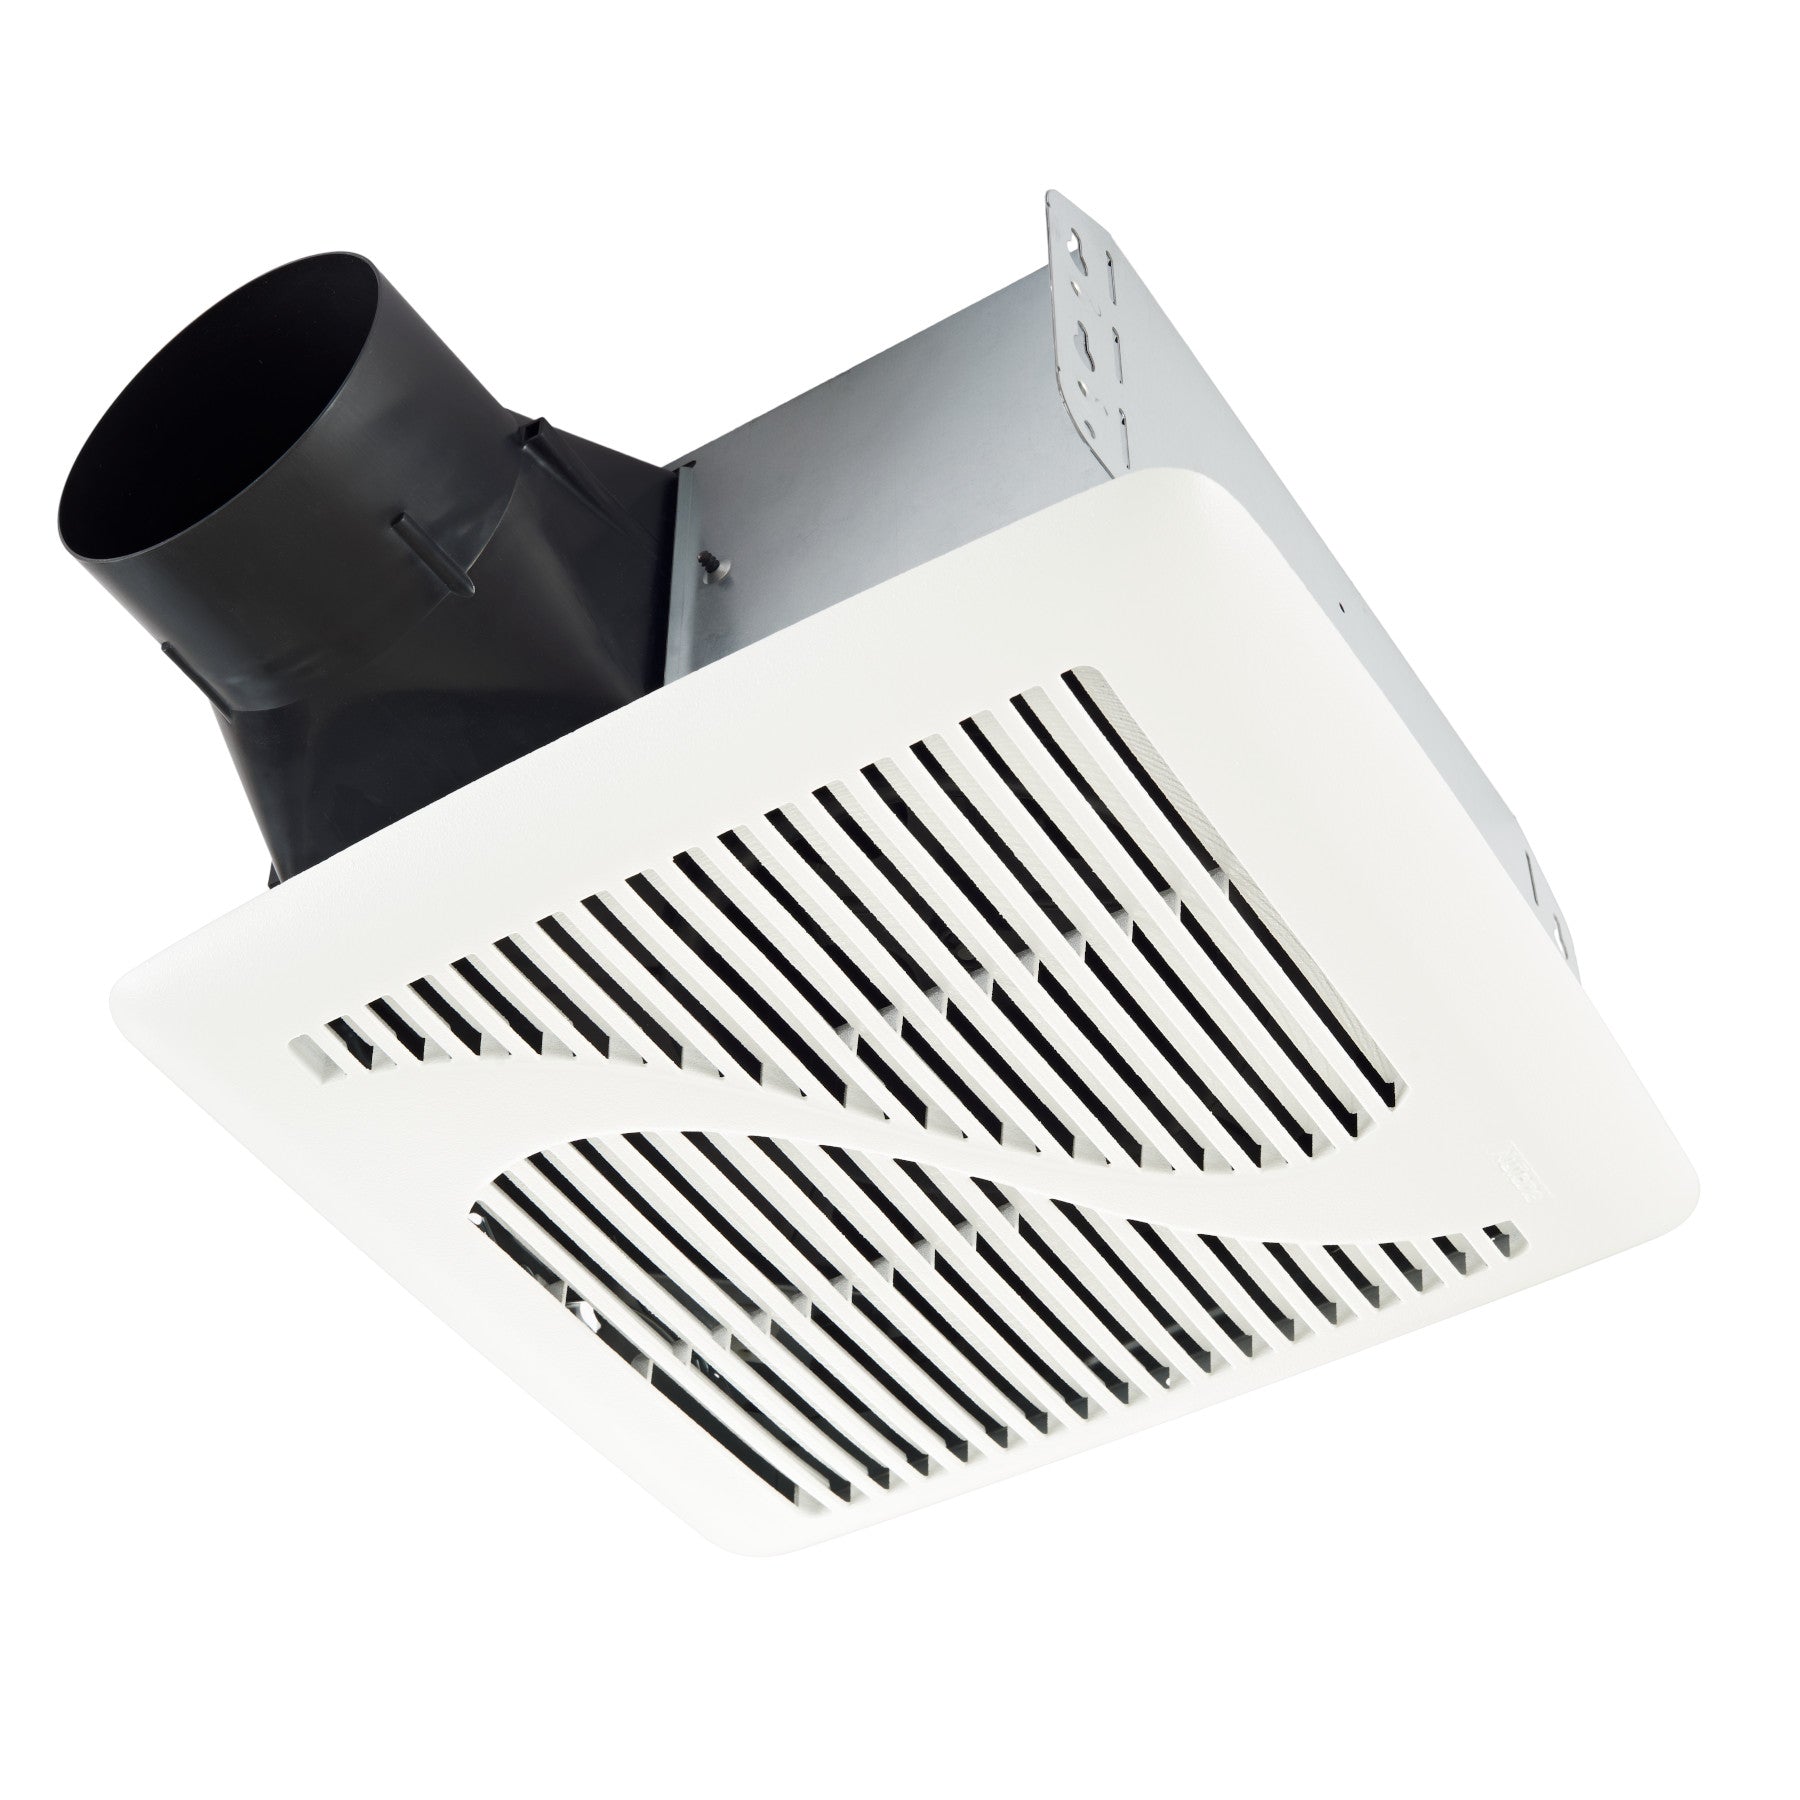 NuTone90 CFM Ventilation Fan, 1.0 Sones; ENERGY STAR Certified